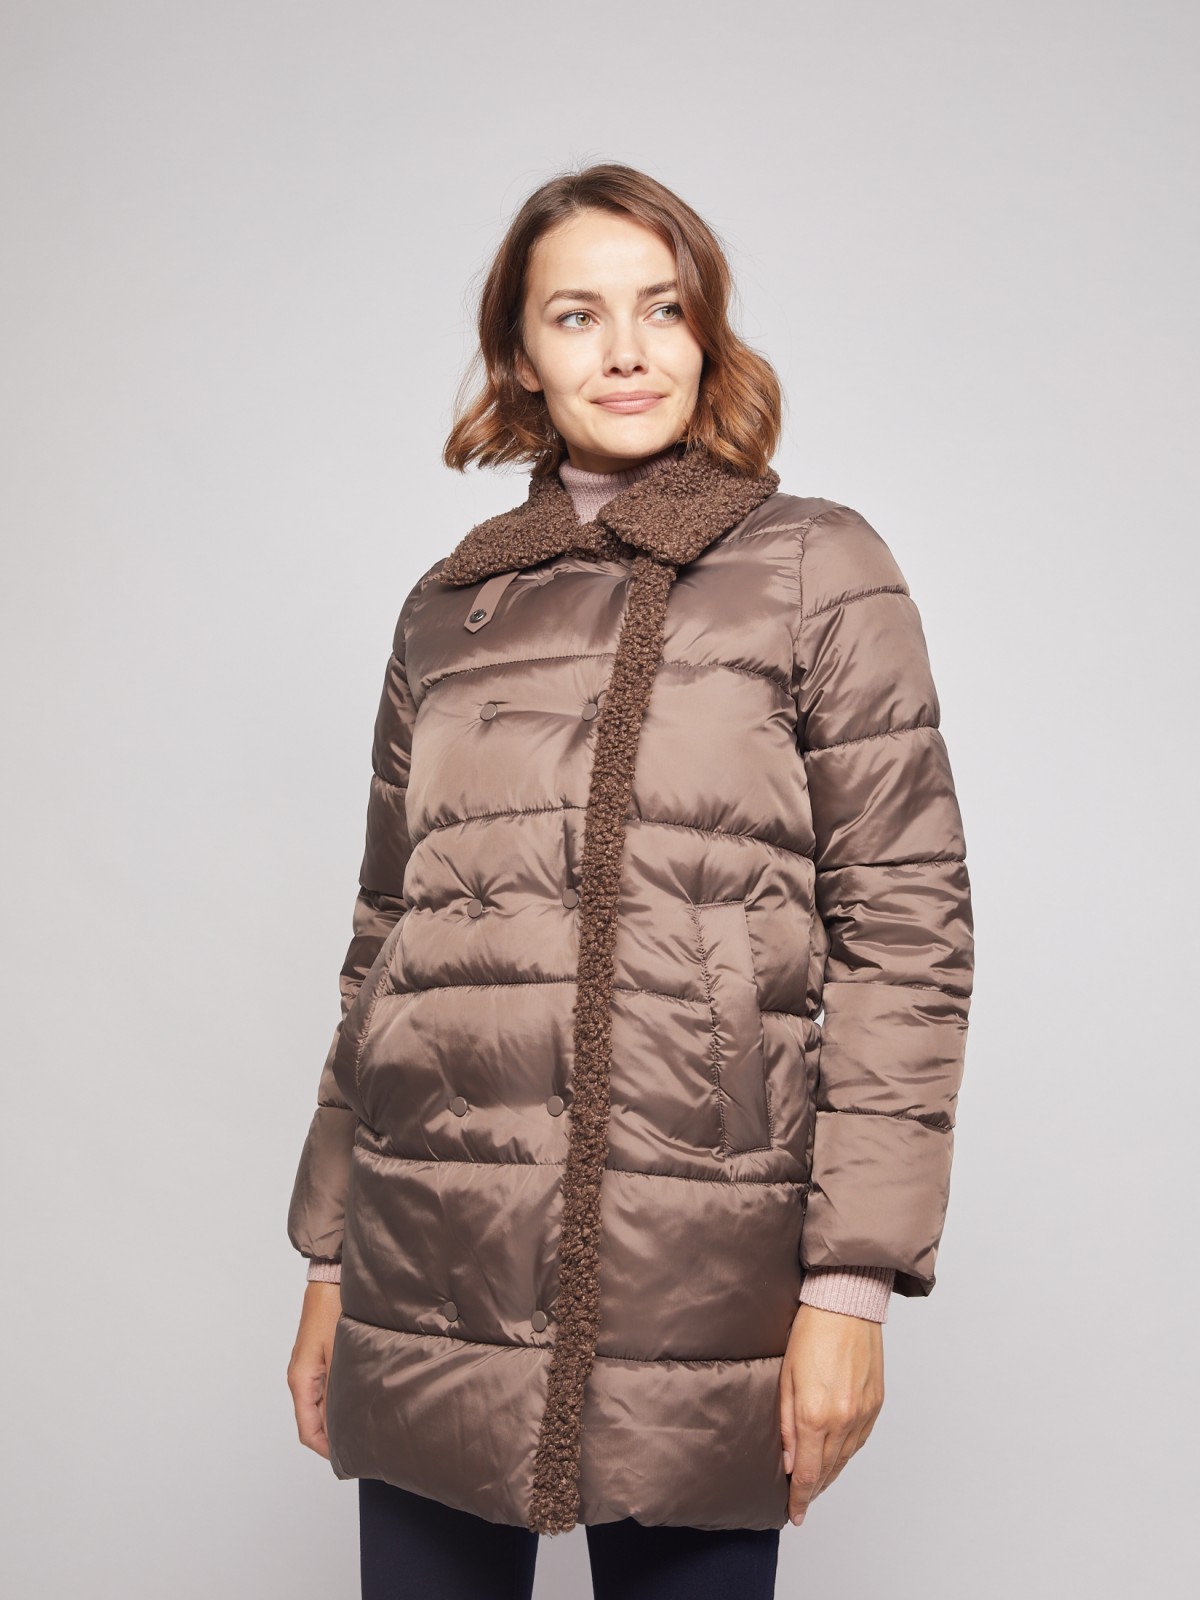 Утеплённое пальто с искусственным мехом zolla 021335239174, цвет коричневый, размер XS - фото 2